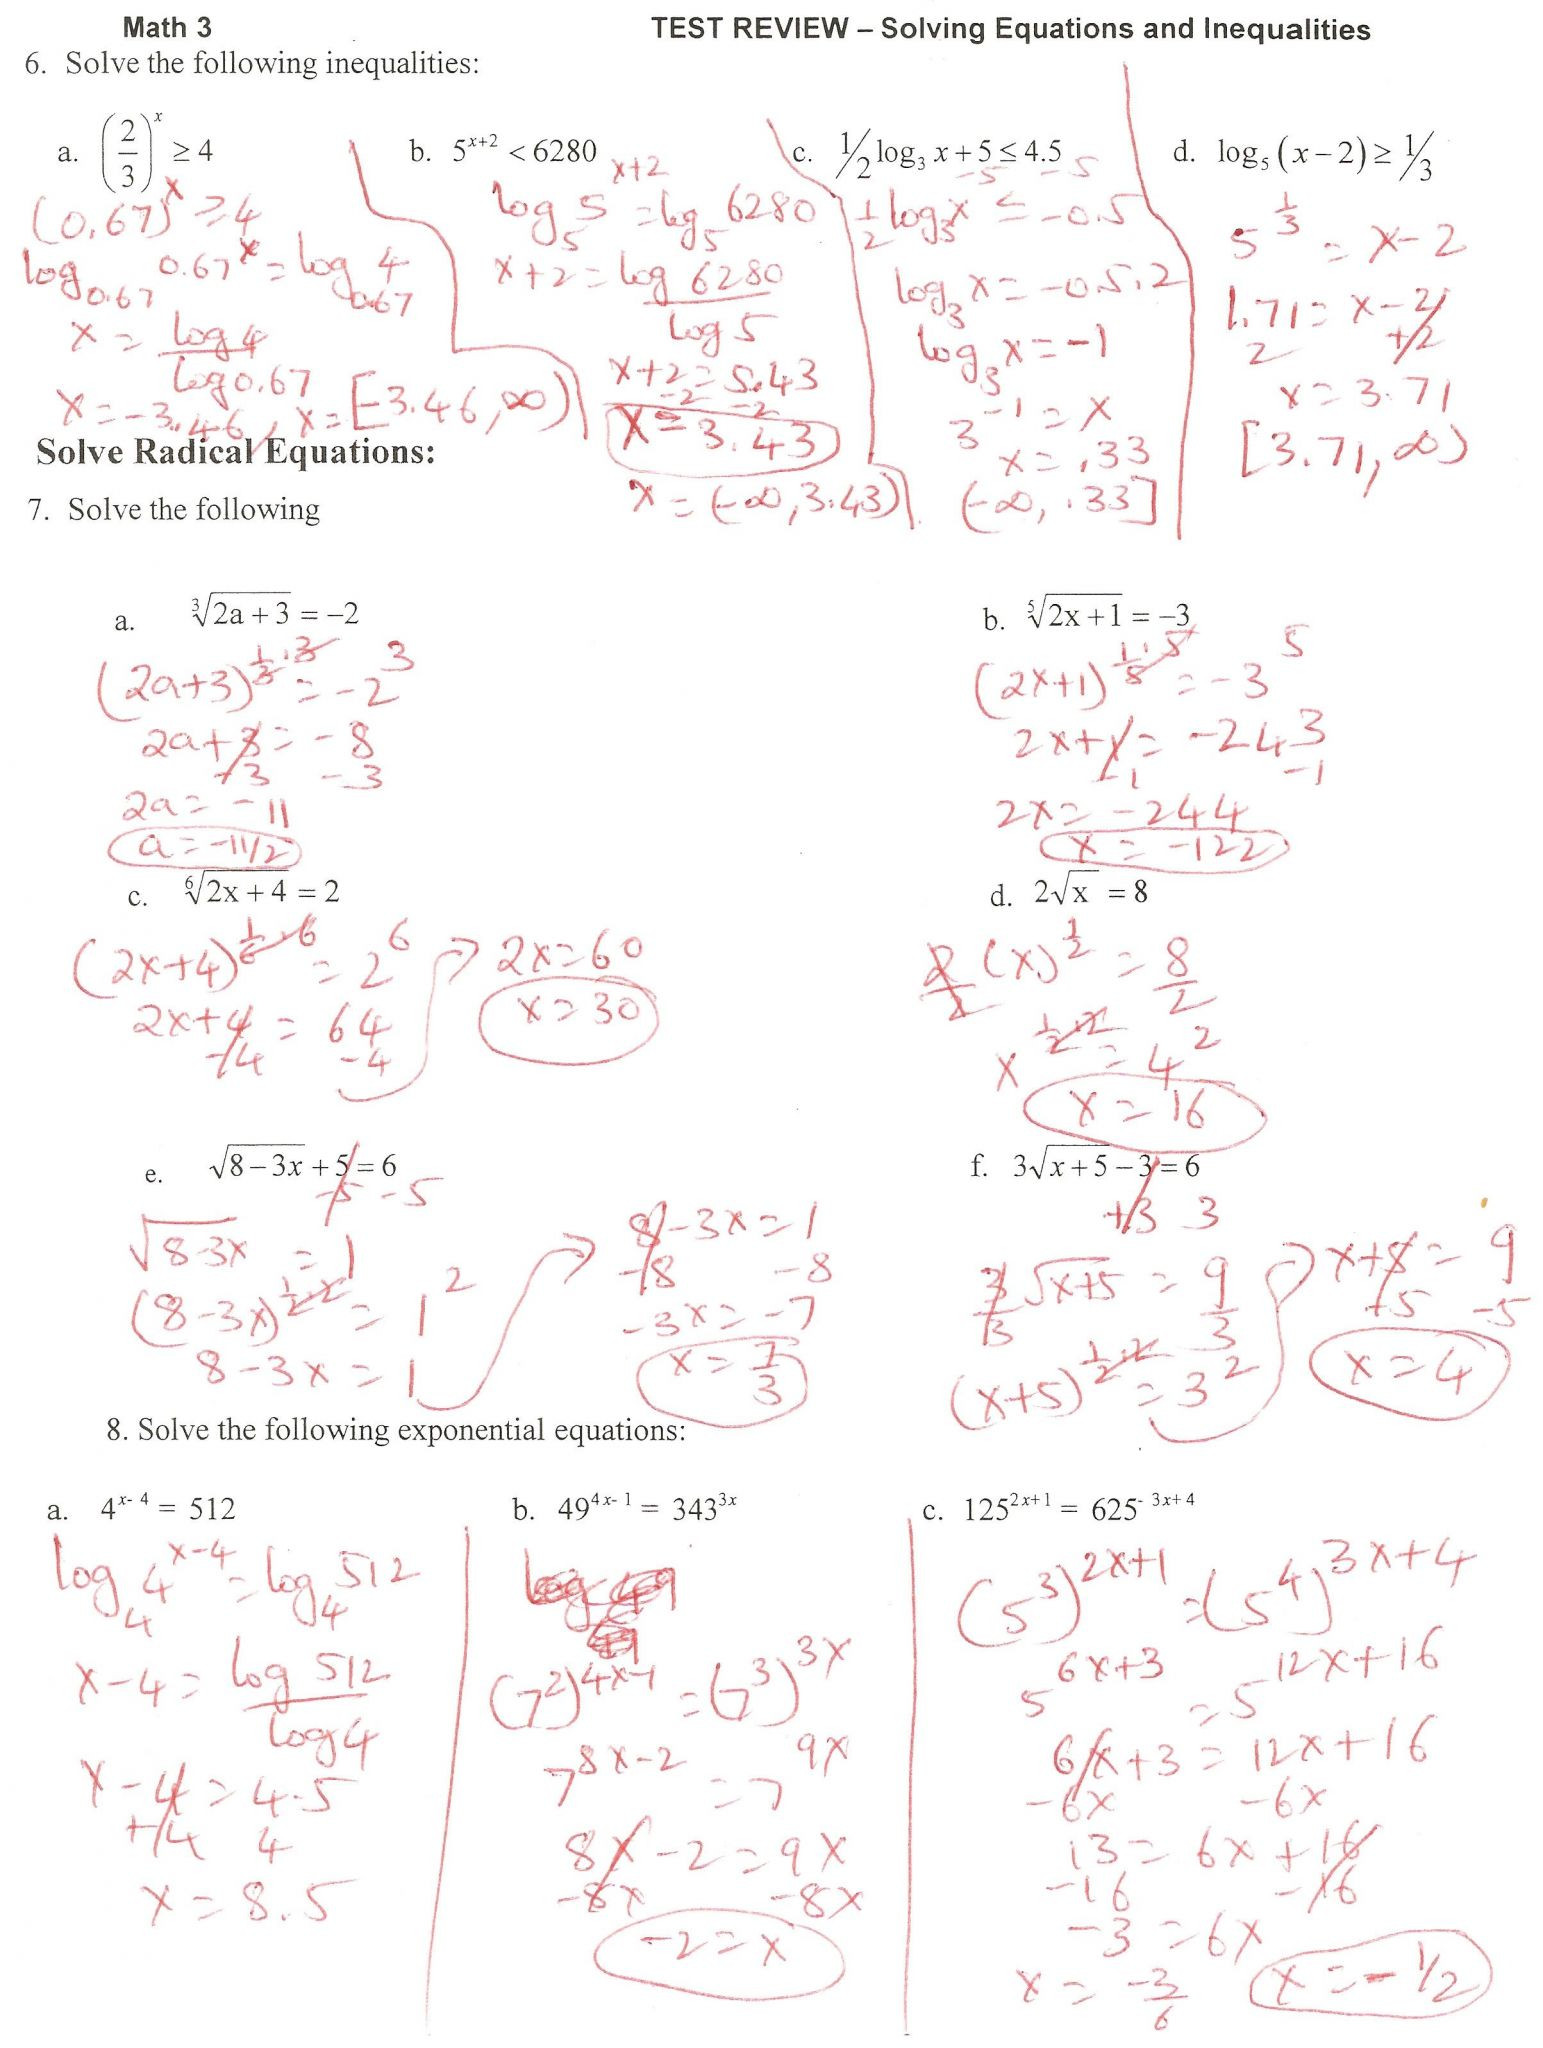 Solving Radical Equations Worksheet 7 solving Radical Equations and Inequalities Worksheet